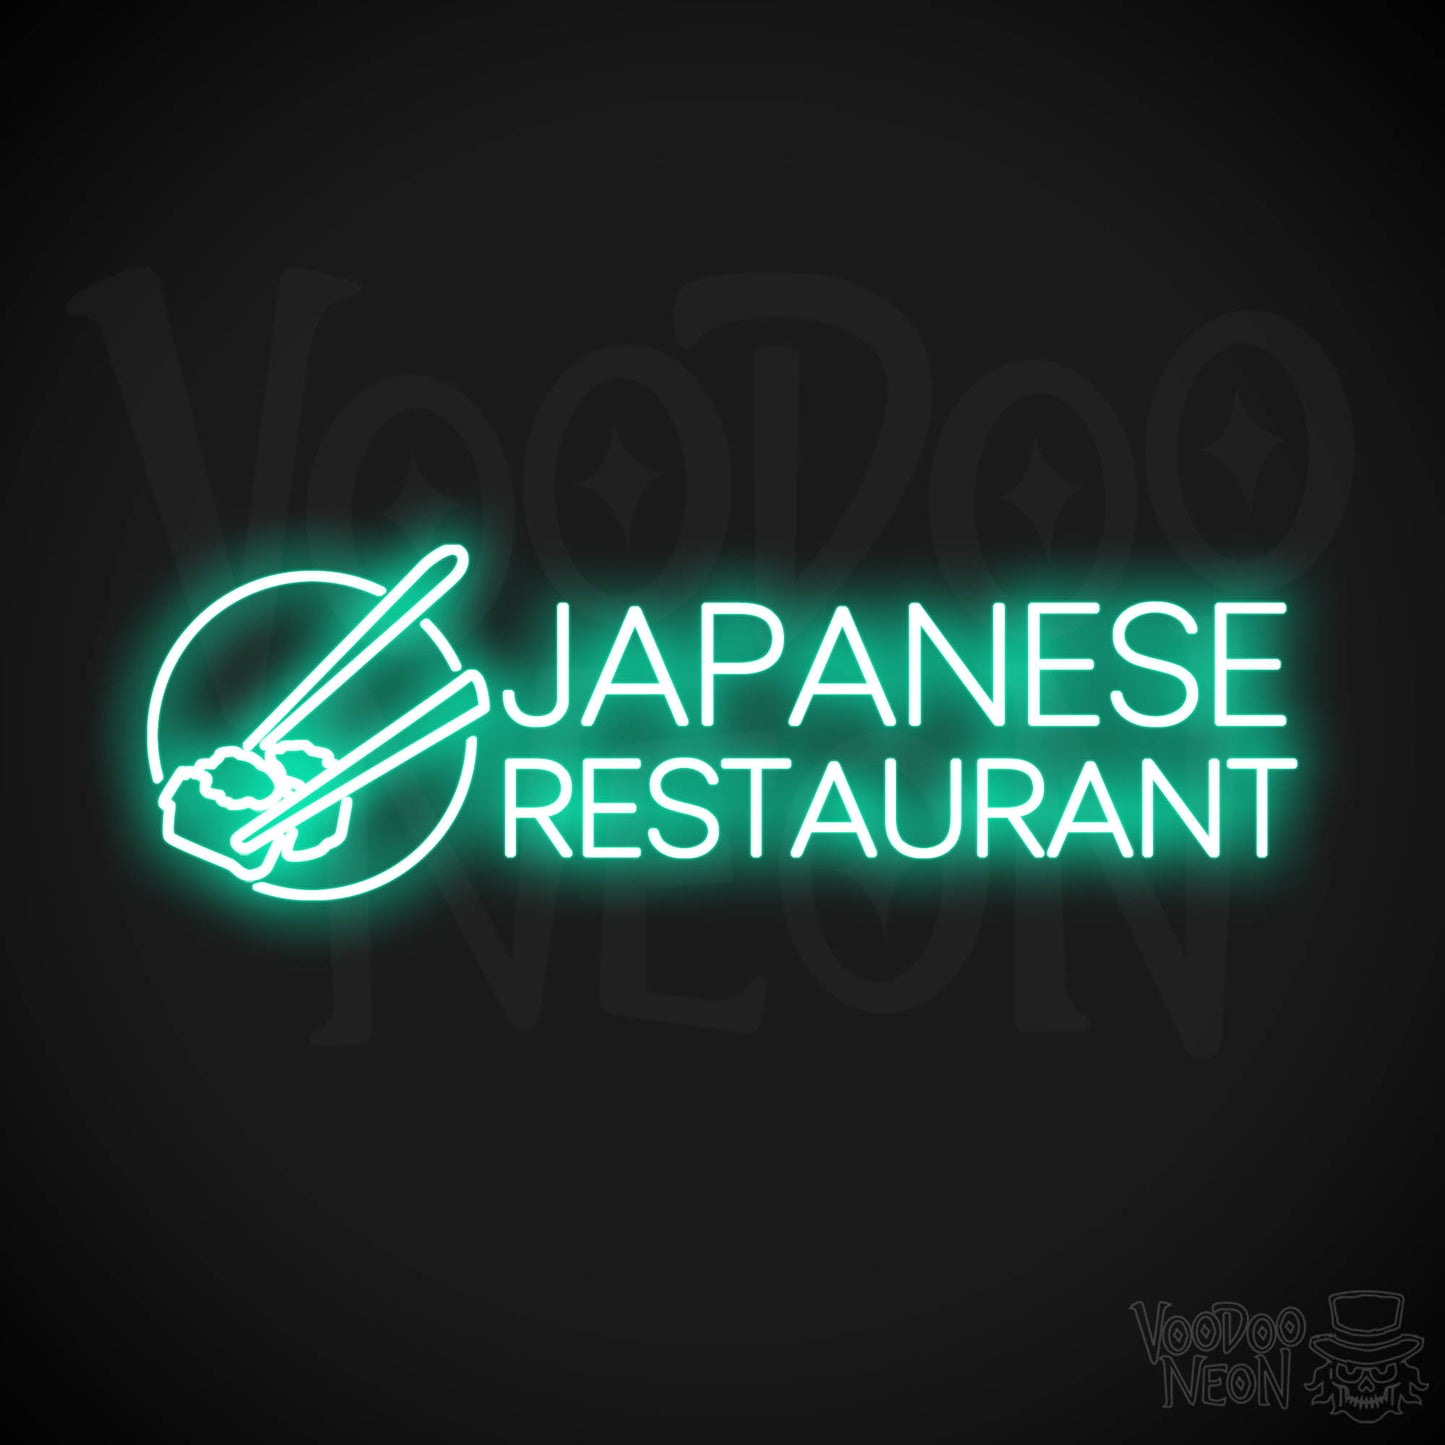 Japanese Restaurant LED Neon - Light Green